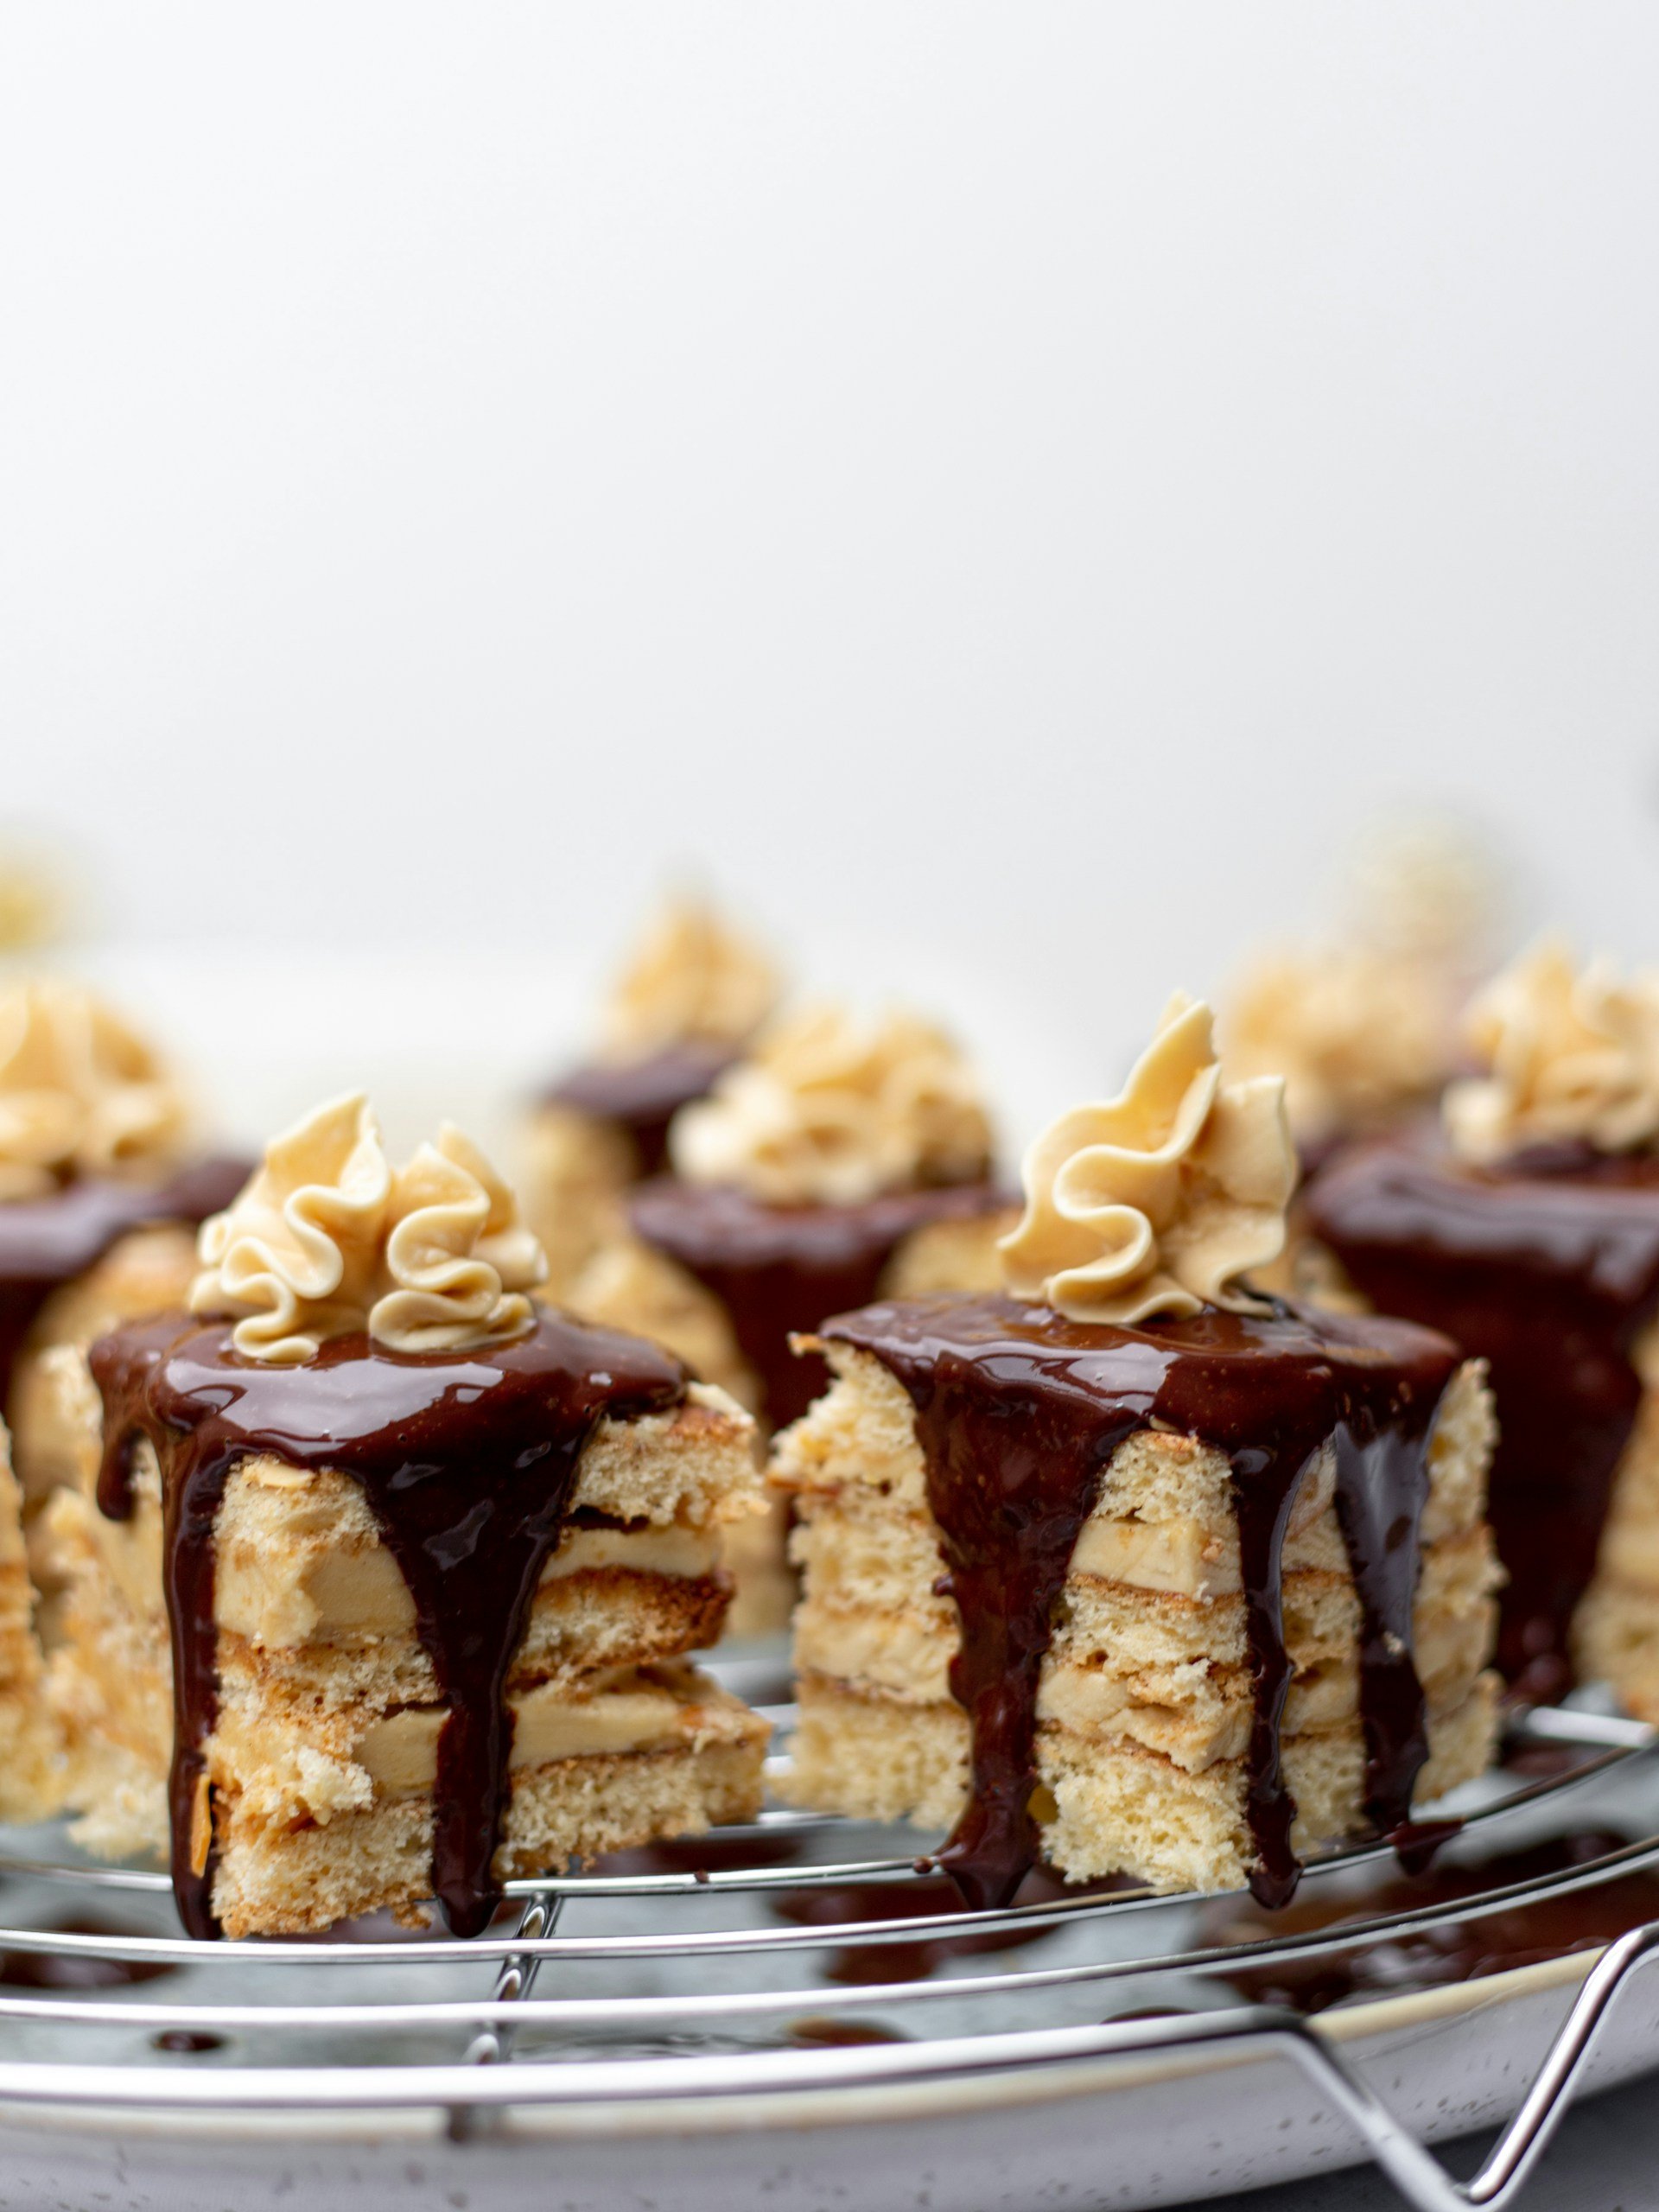 Ganache para cubrir la tarta de chocolate: el mejor truco de los pasteleros